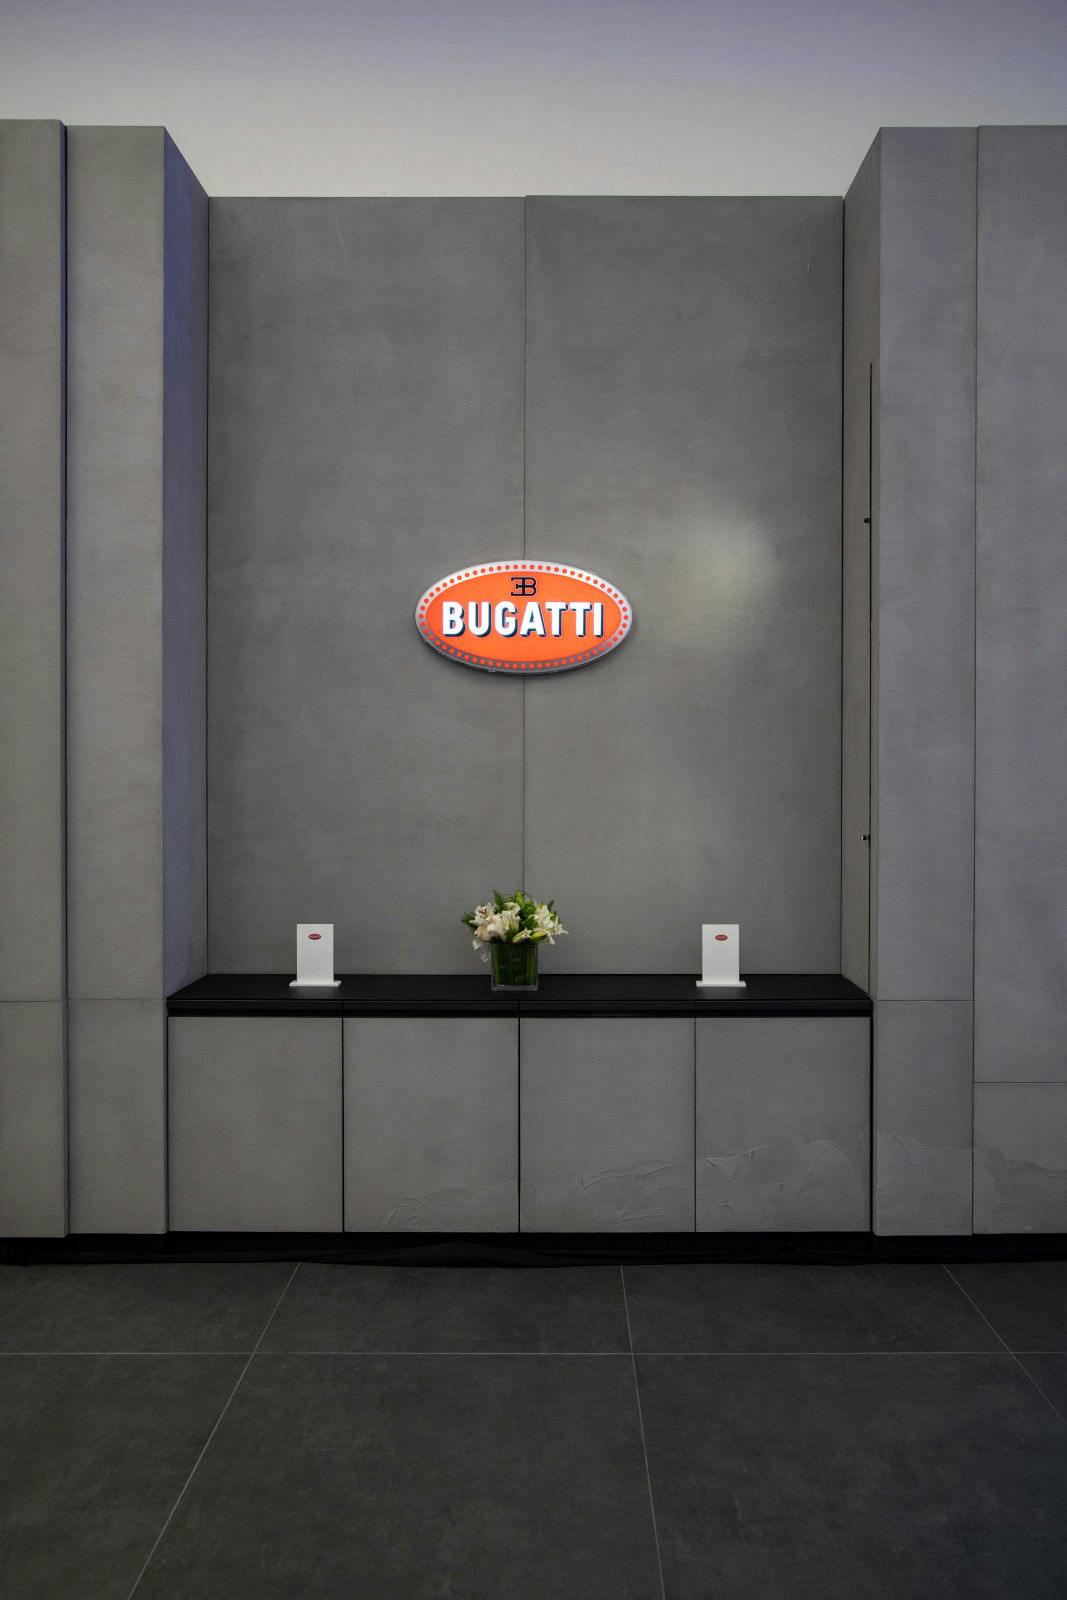 Bugatti eröffnet seinen neuen Showroom im Mittleren Osten in Riad, in Partnerschaft mit SAMACO Automotive.